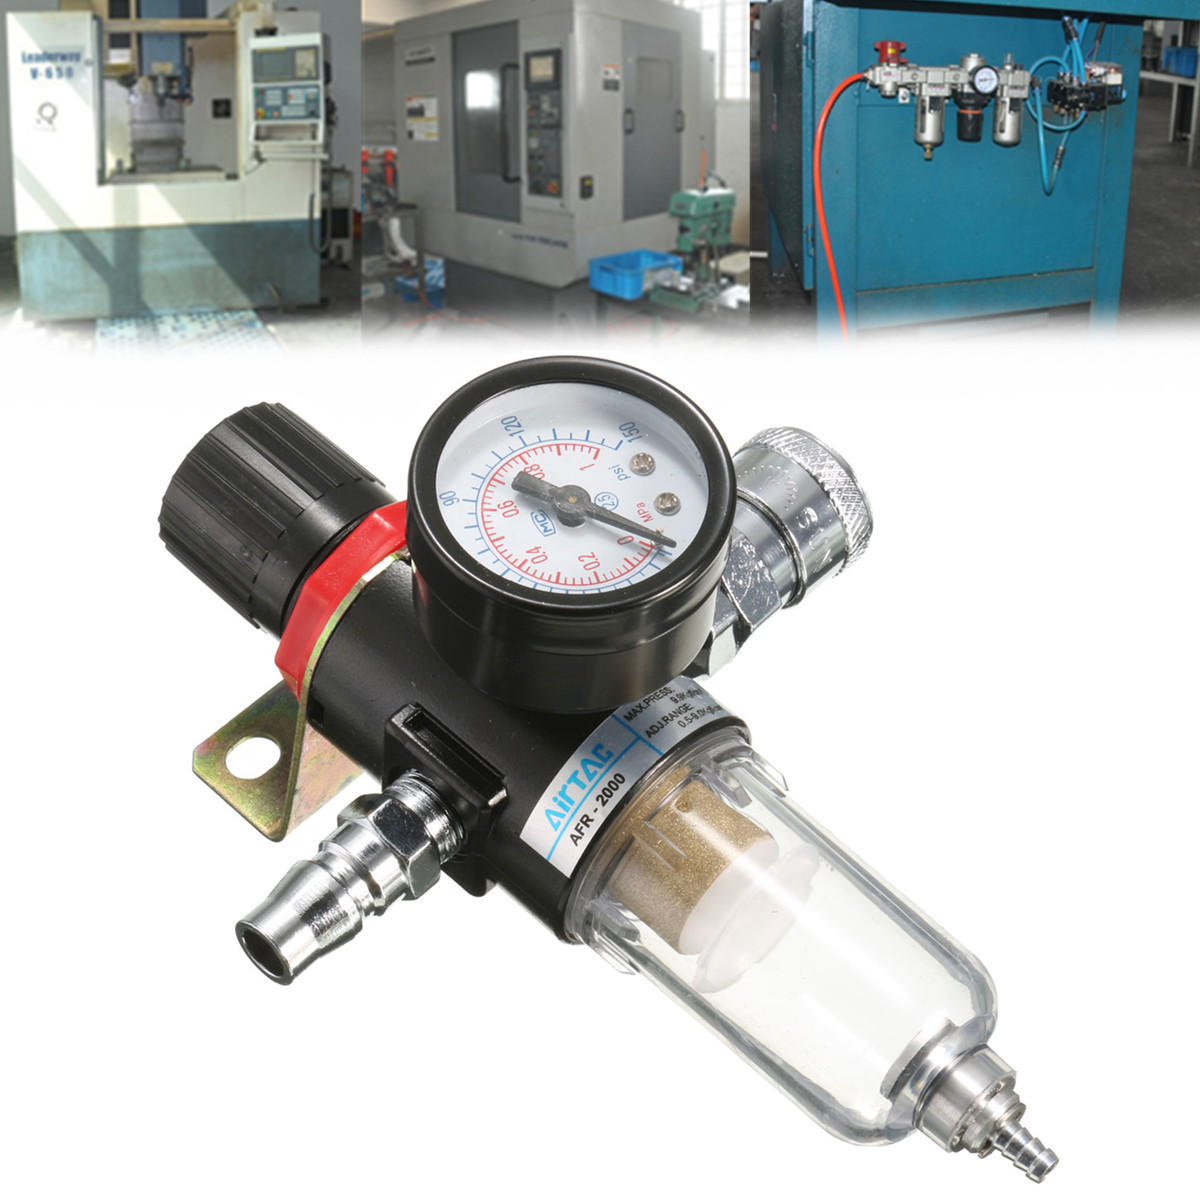 AFR-2000 1/4 "Luchtcompressor Filter Waterafscheider Trap Gereedschap Kit Regulator Gauge